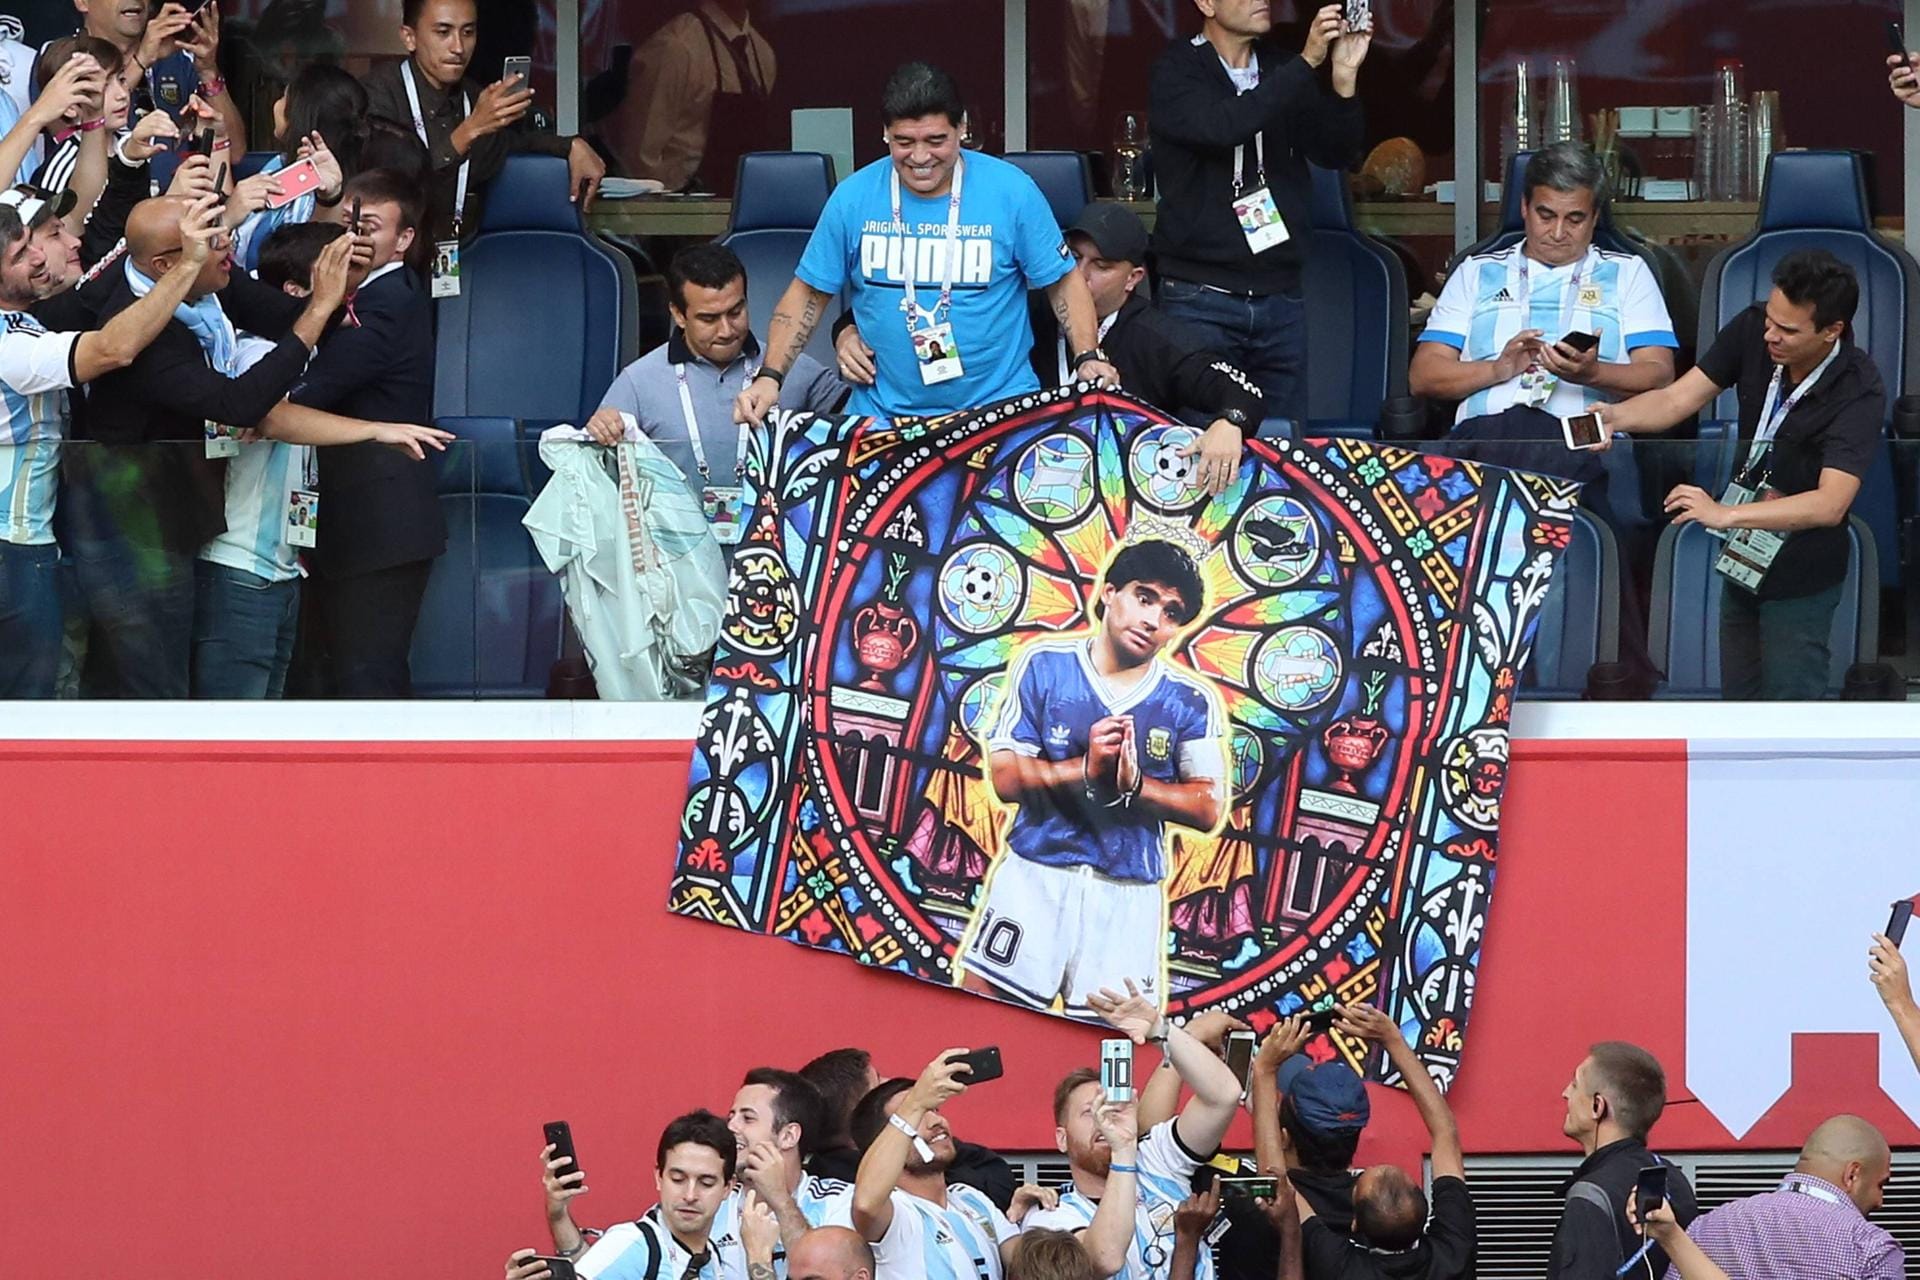 Noch ein paar Selfies: Gleich zwei mal Maradona – als Ikone auf einem Transparent und lächelnd auf der Tribüne.